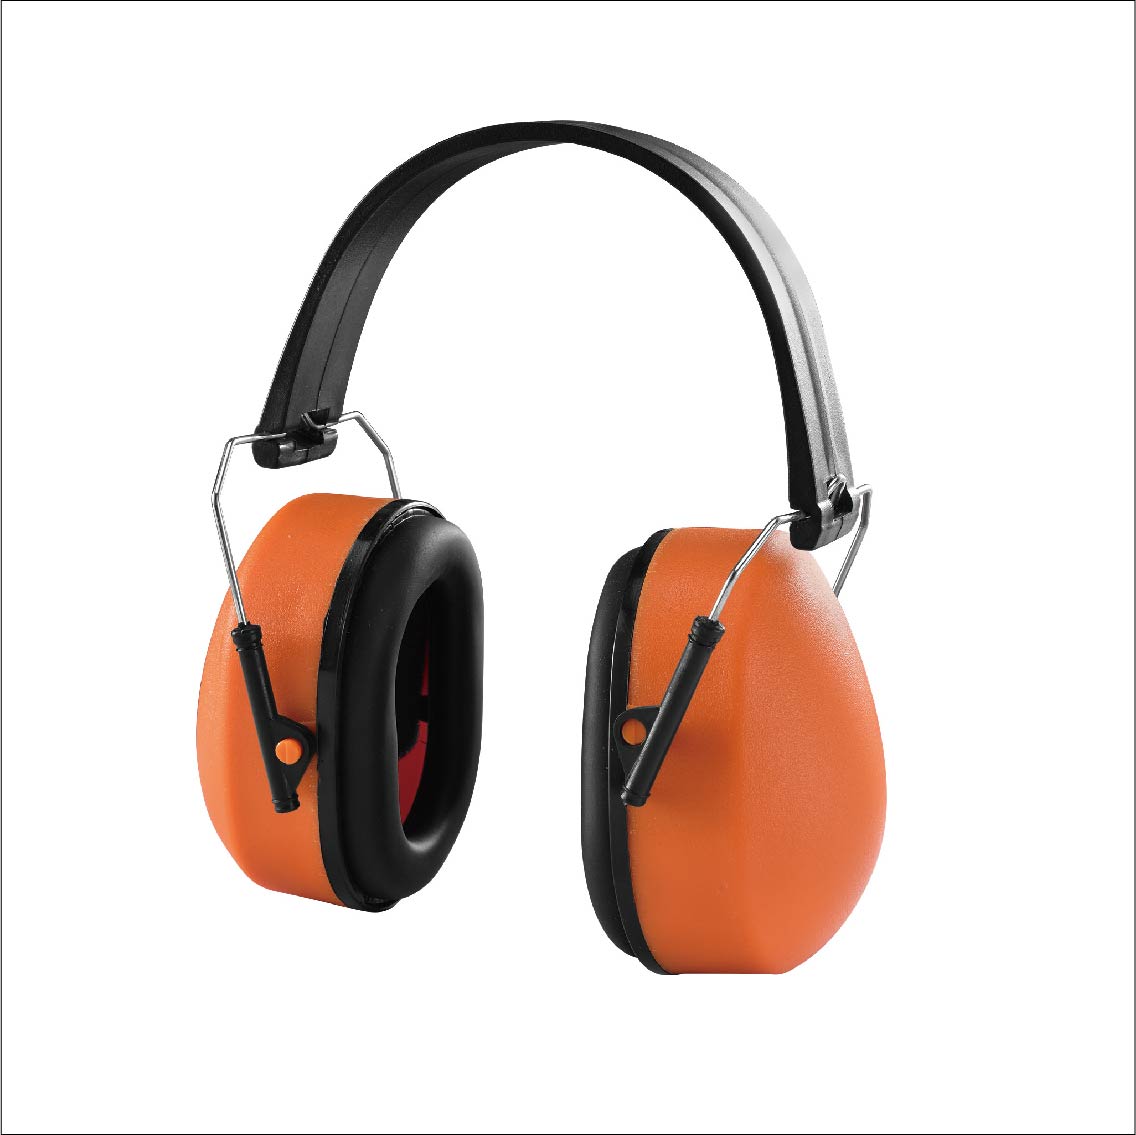  CE EN 352 Soundproof ABS Folding Ear Muff